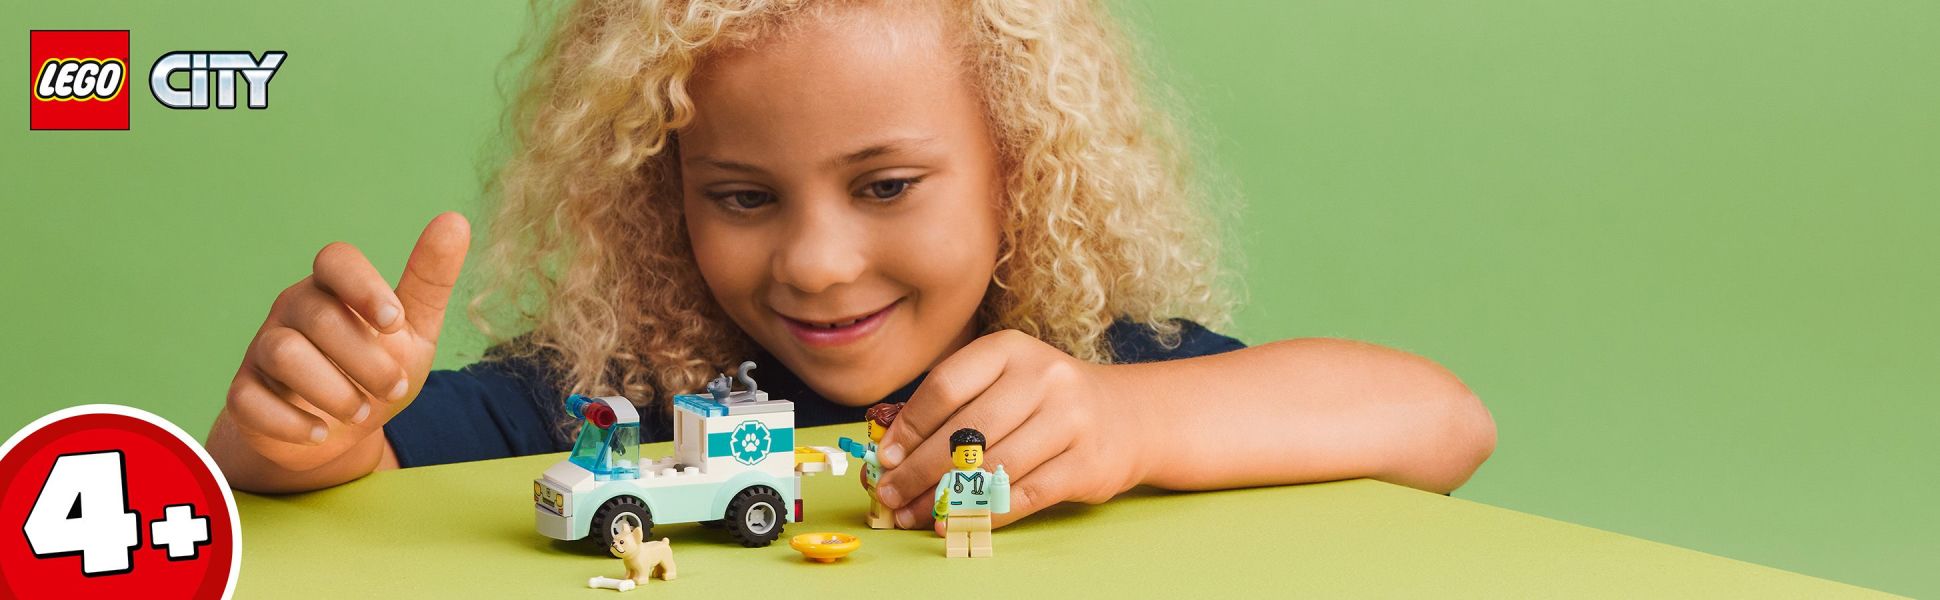 LEGO City Vet Van Rescue 60382, ambulancia de animales de juguete, juego de  juguete de aprendizaje para niños de 4 años más con 2 minifiguras